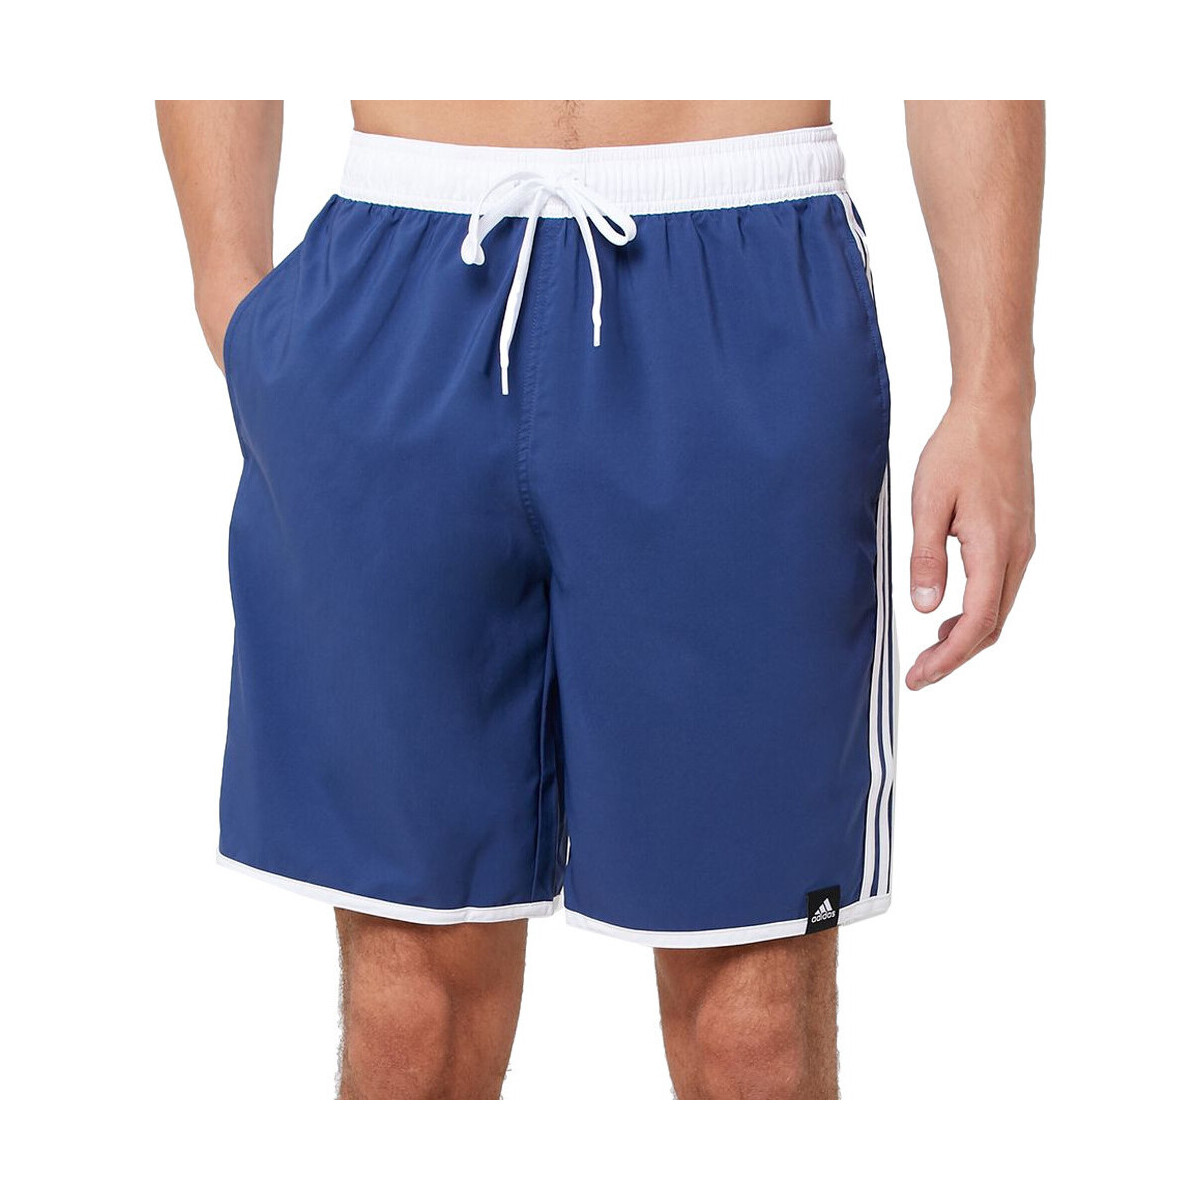 Vêtements Homme Maillots / Shorts de bain adidas Originals FJ3362 Bleu